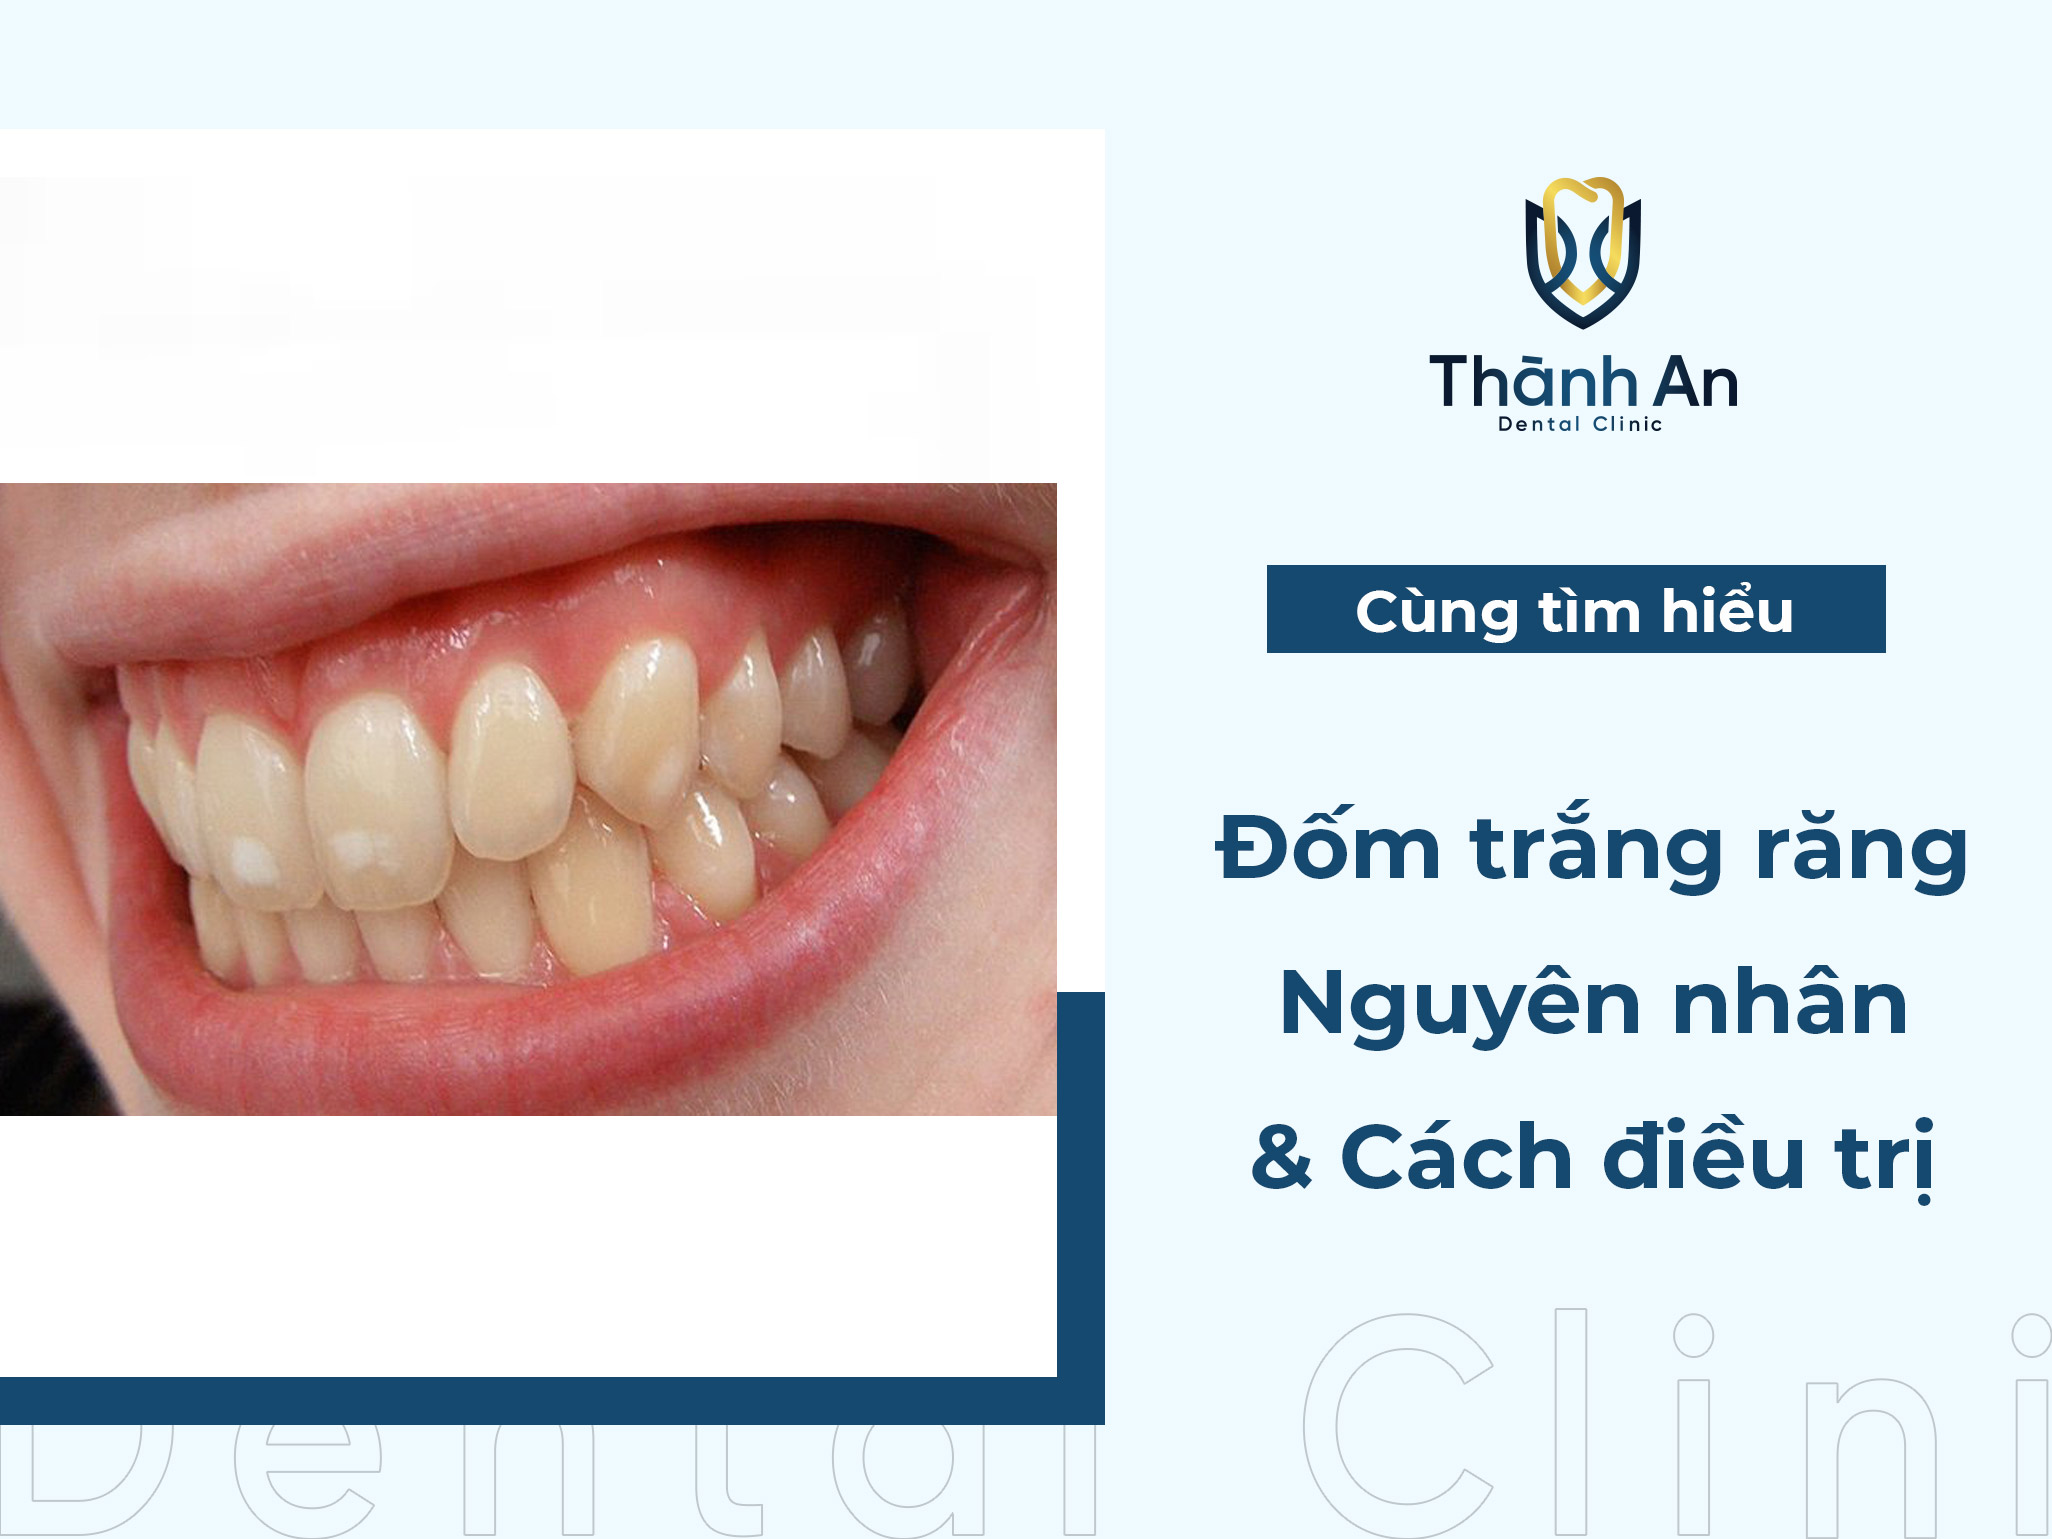 Răng có đốm trắng: Nguyên nhân và cách điều trị & phòng ngừa